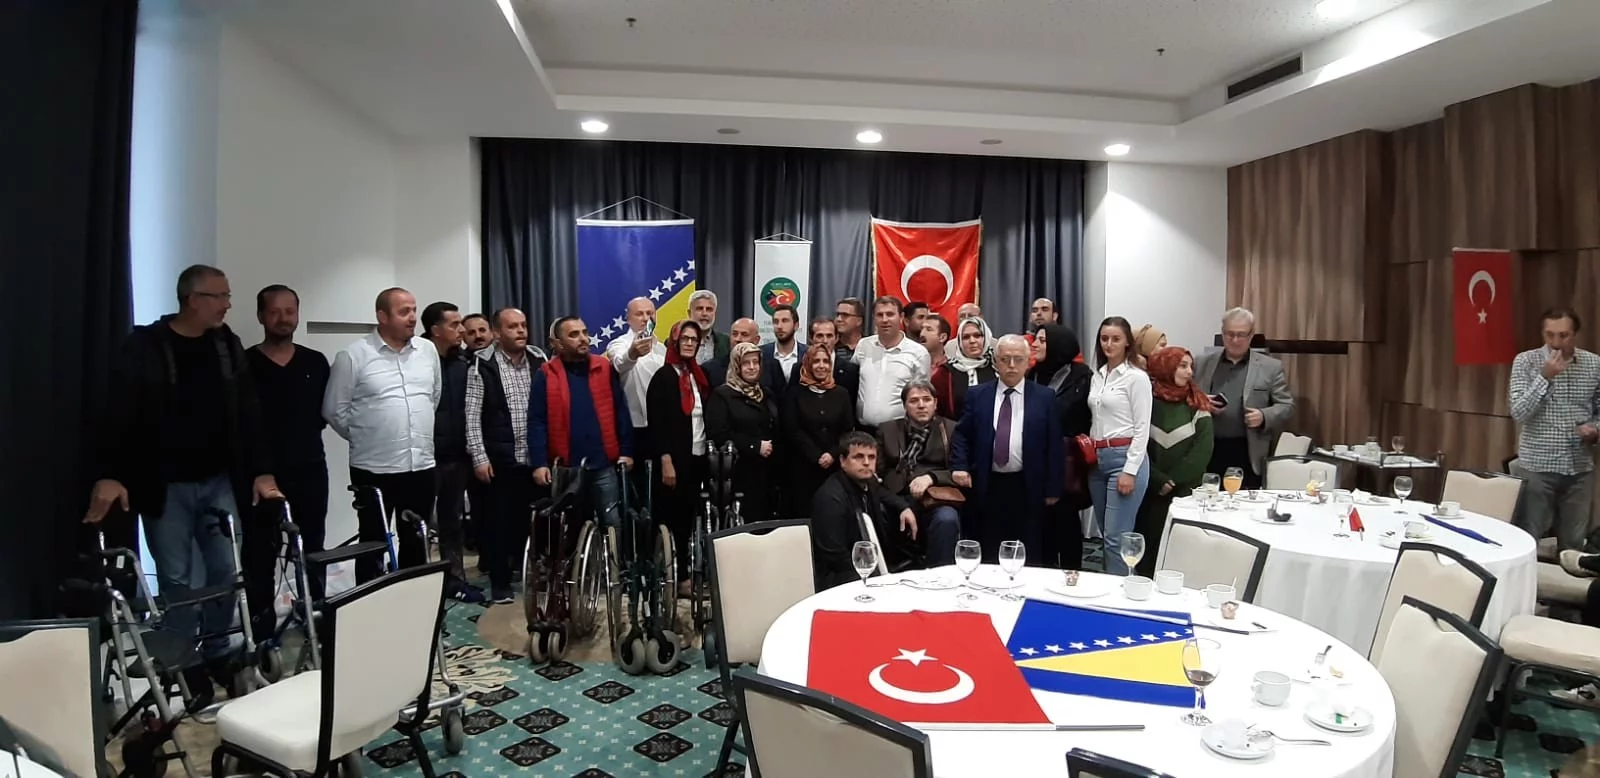 Bursa'dan Bosna'ya tekerlekli sandalye desteği